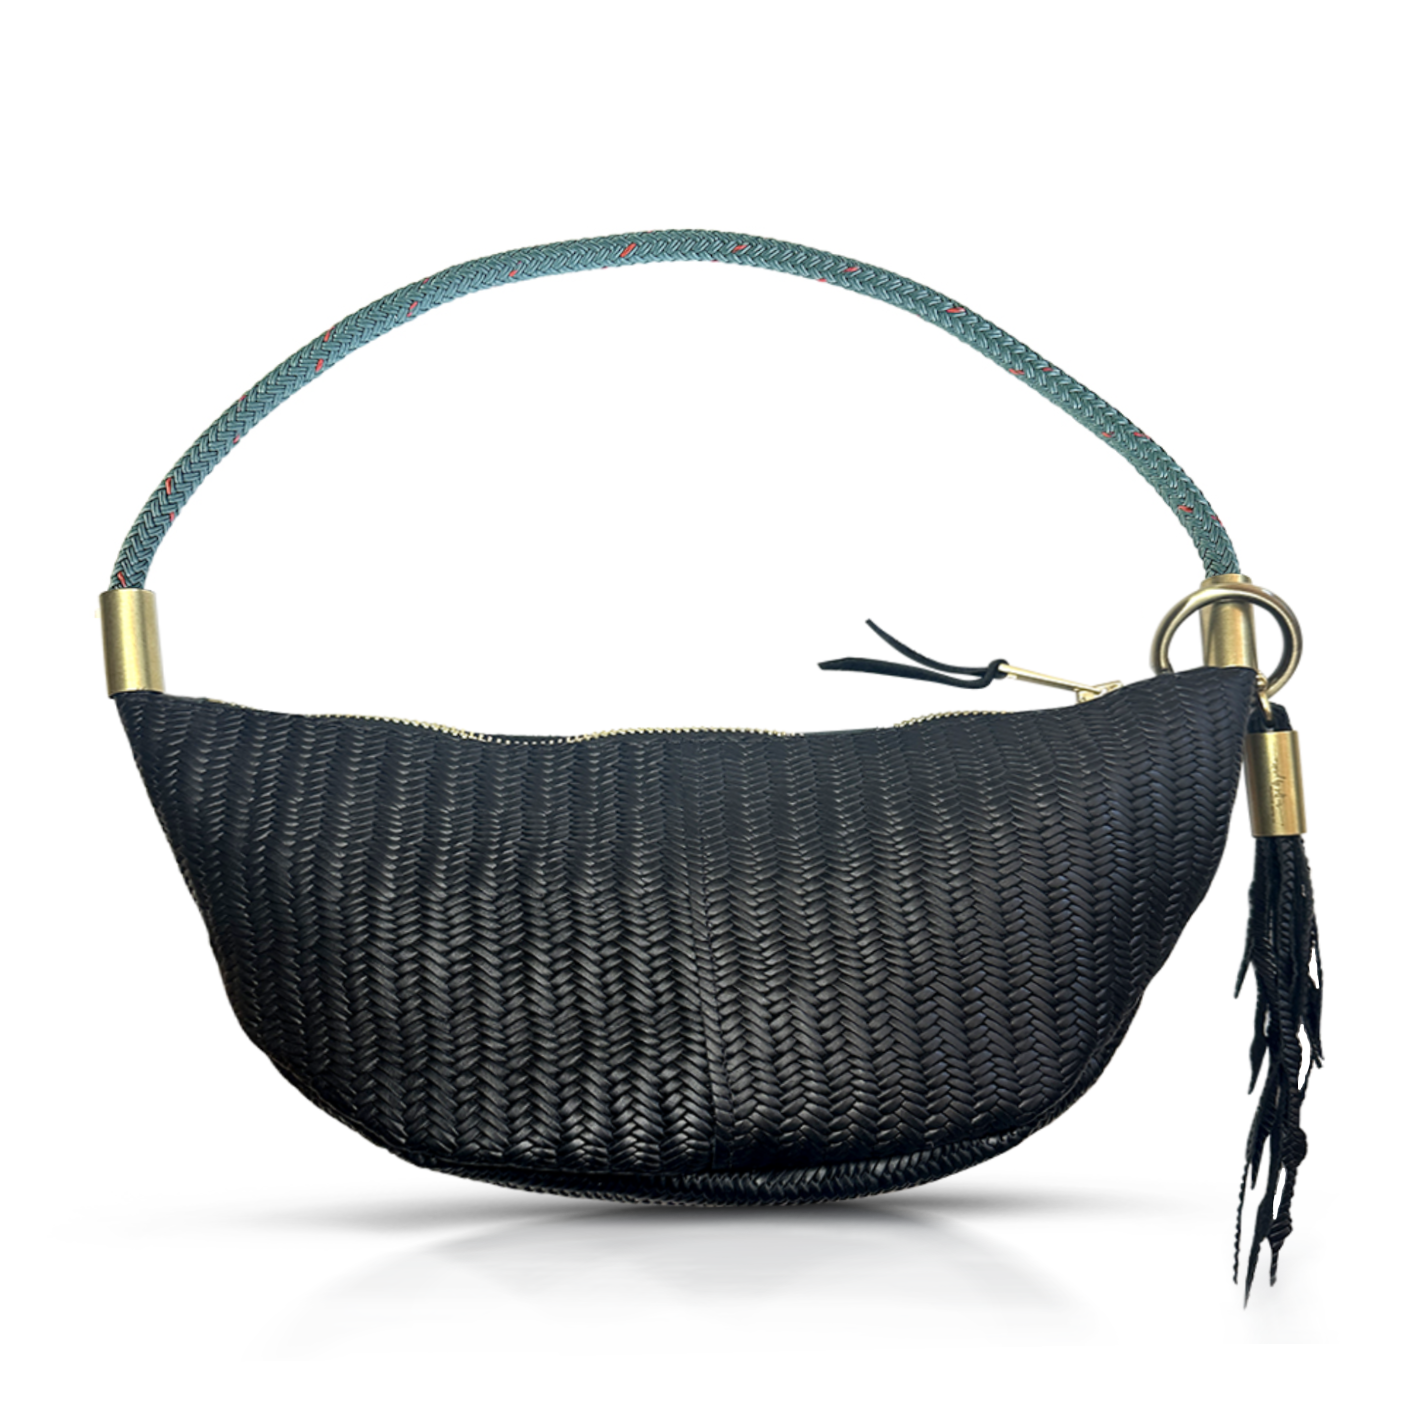 black basketweave leather sling bag with teal dock line handle